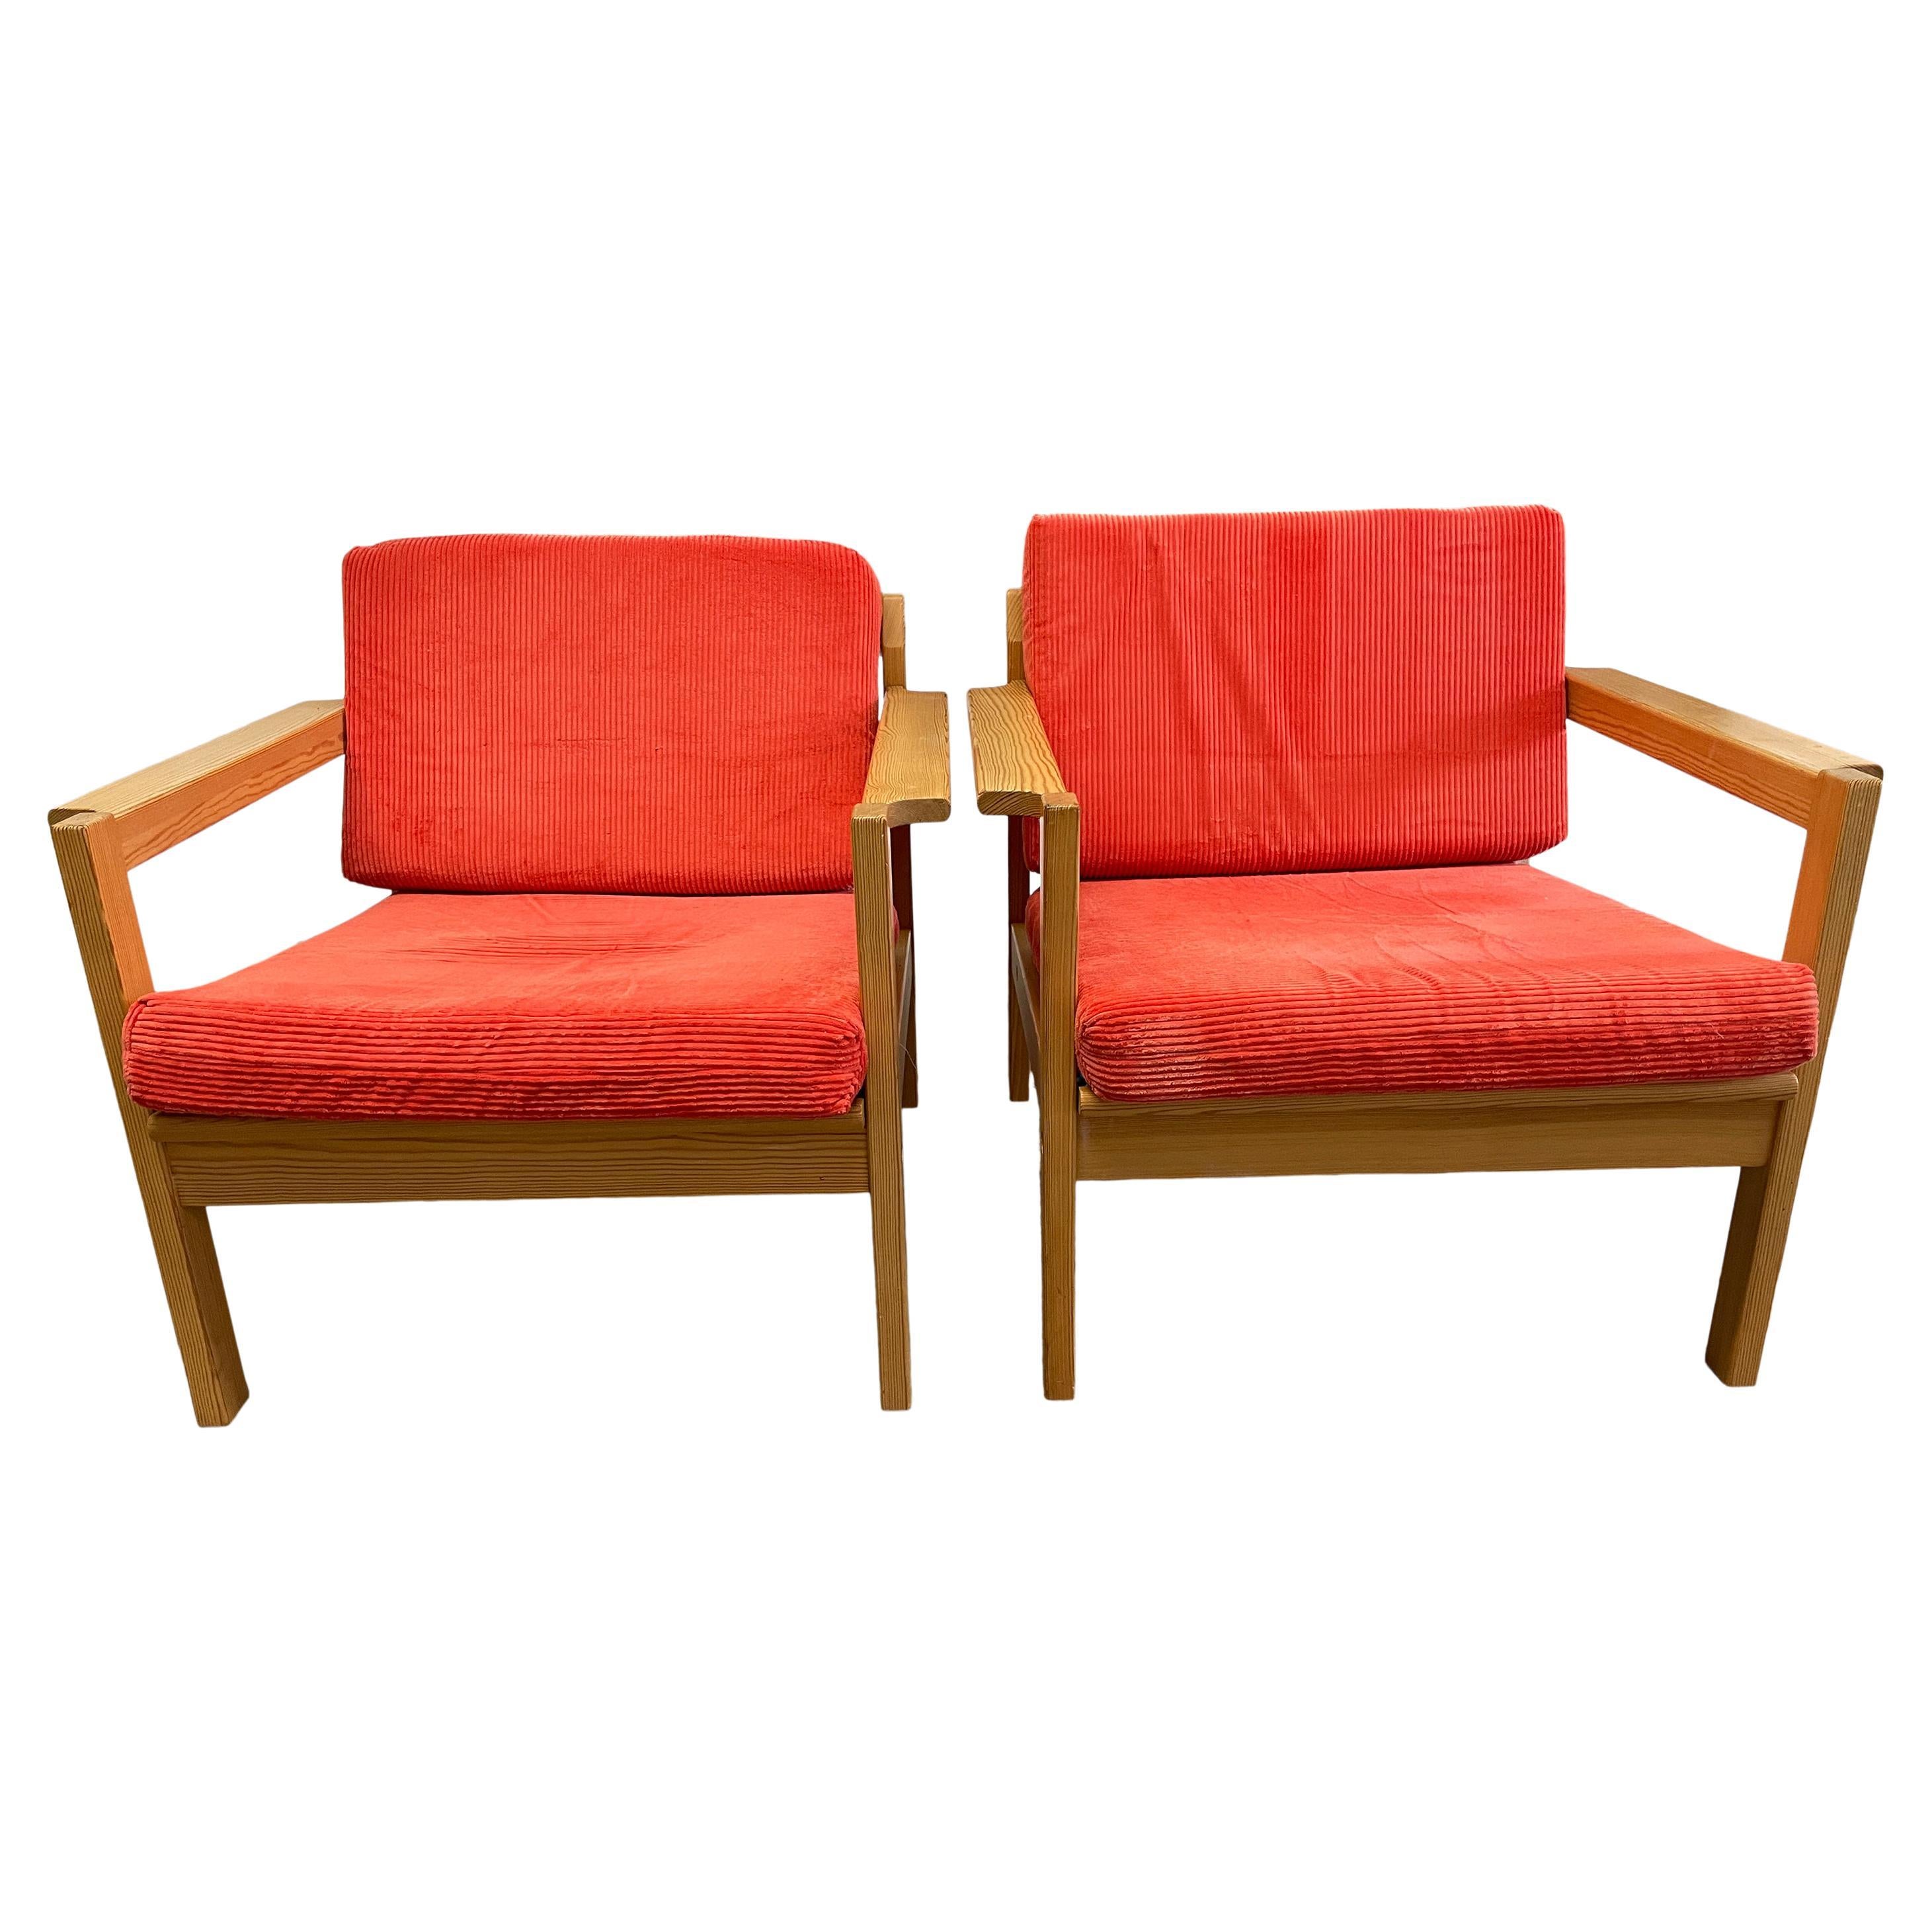 Ein Paar seltene schwedische Sessel mit orange/roter Kordpolsterung. Massive Bugholzrahmen aus Birke mit Lattenrost und Polsterung aus pfirsichfarbener Schurwolle. Originaler Vintage-Zustand. Die Rahmen sind aus massiver Birke. Hergestellt in